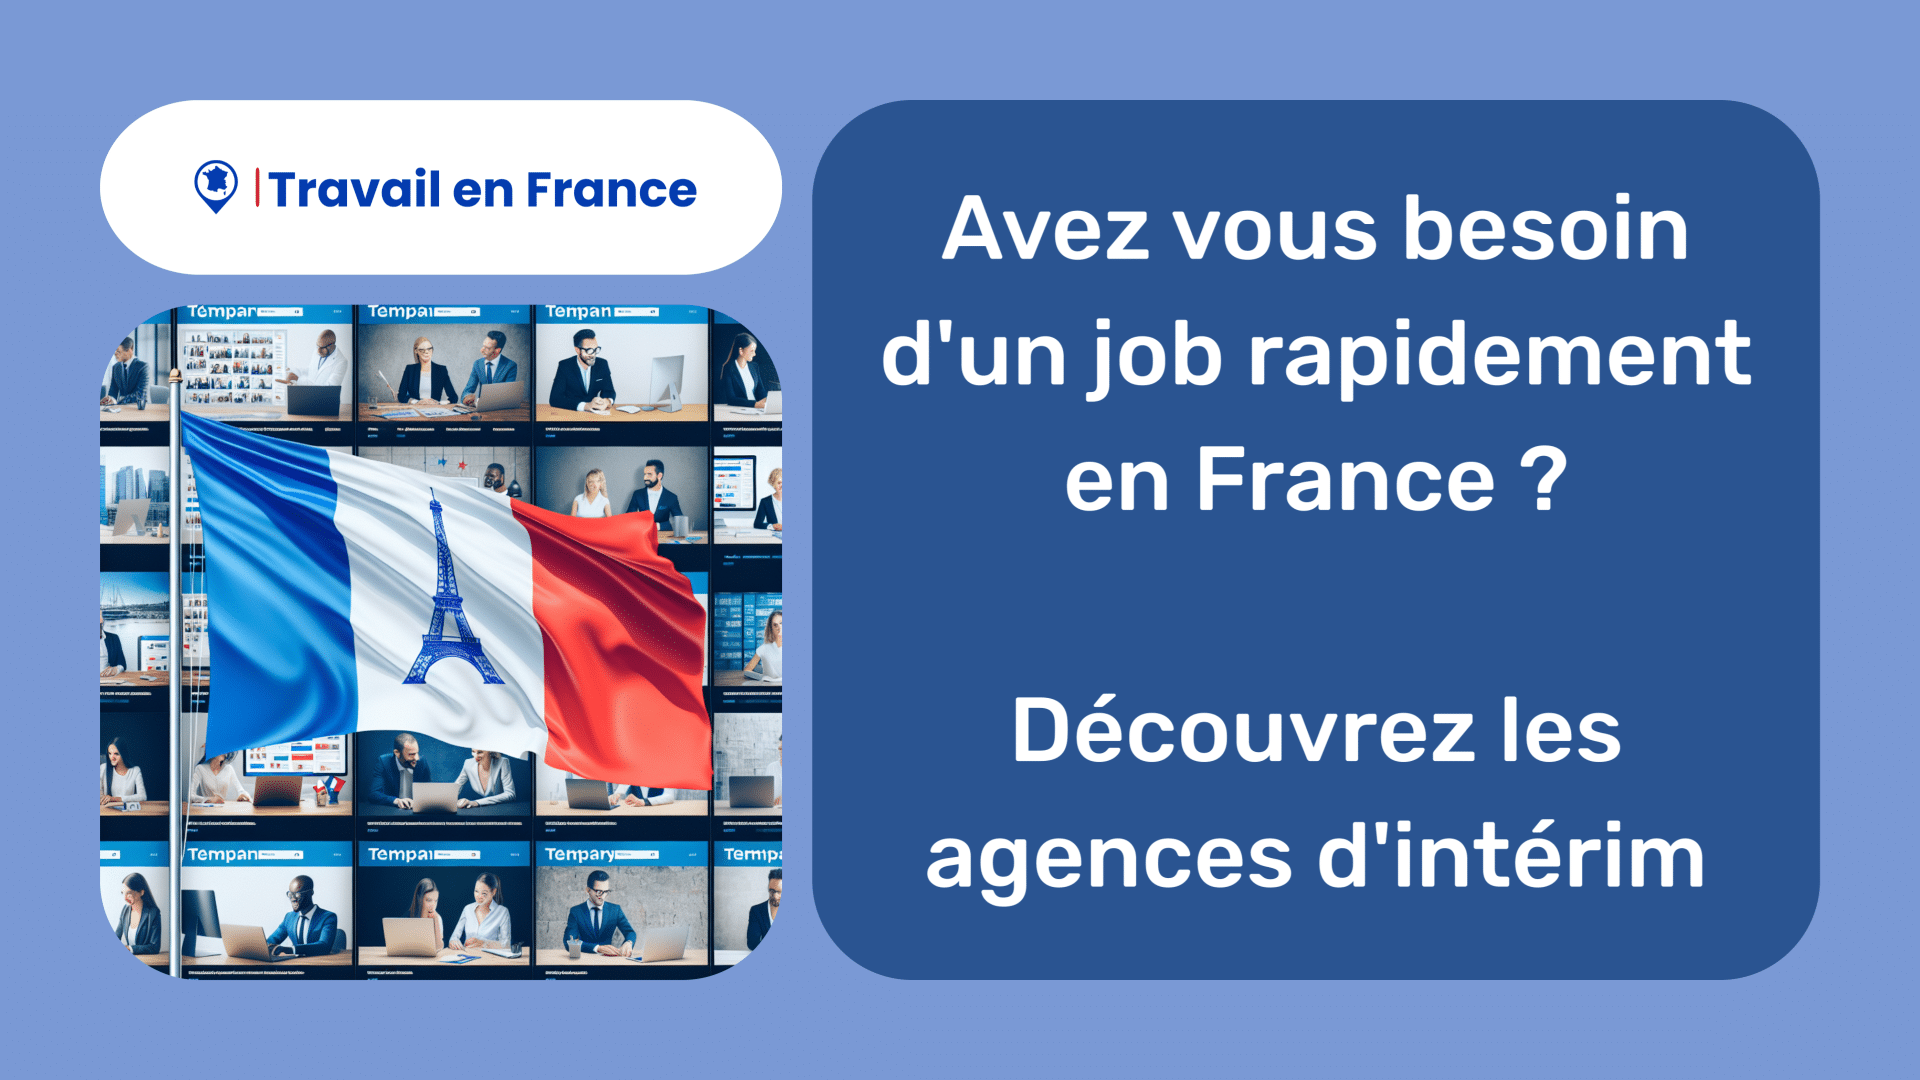 Avez vous besoin d'un job rapidement en France ! Découvrez les agences d'intérim